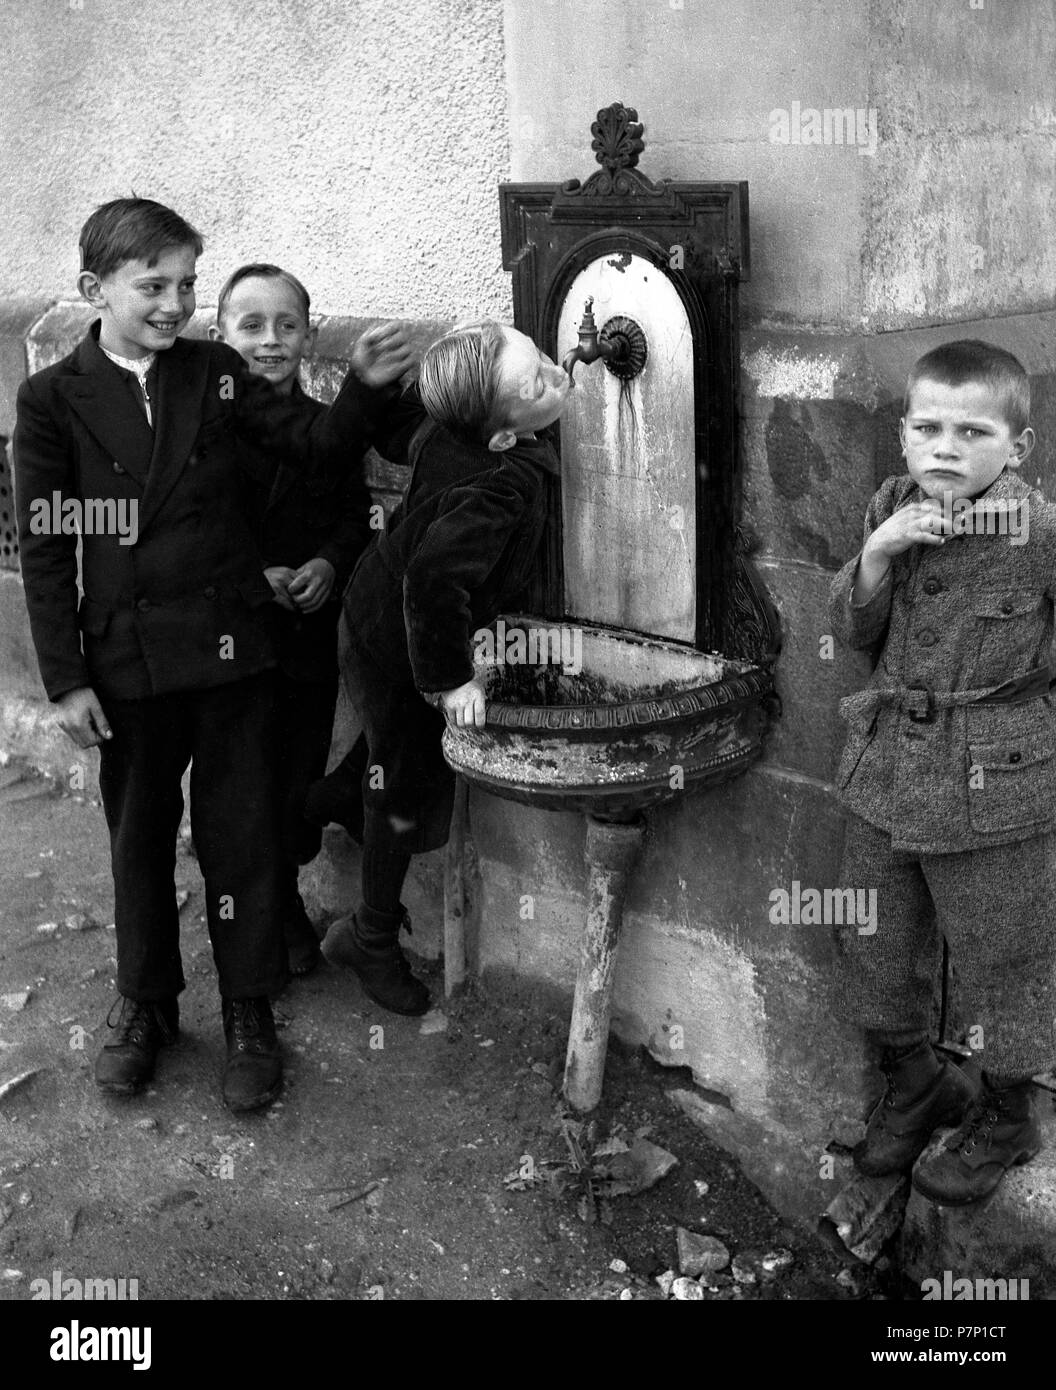 Les enfants boivent de Brunnen, ca. 1955, Freiburg, Allemagne Banque D'Images